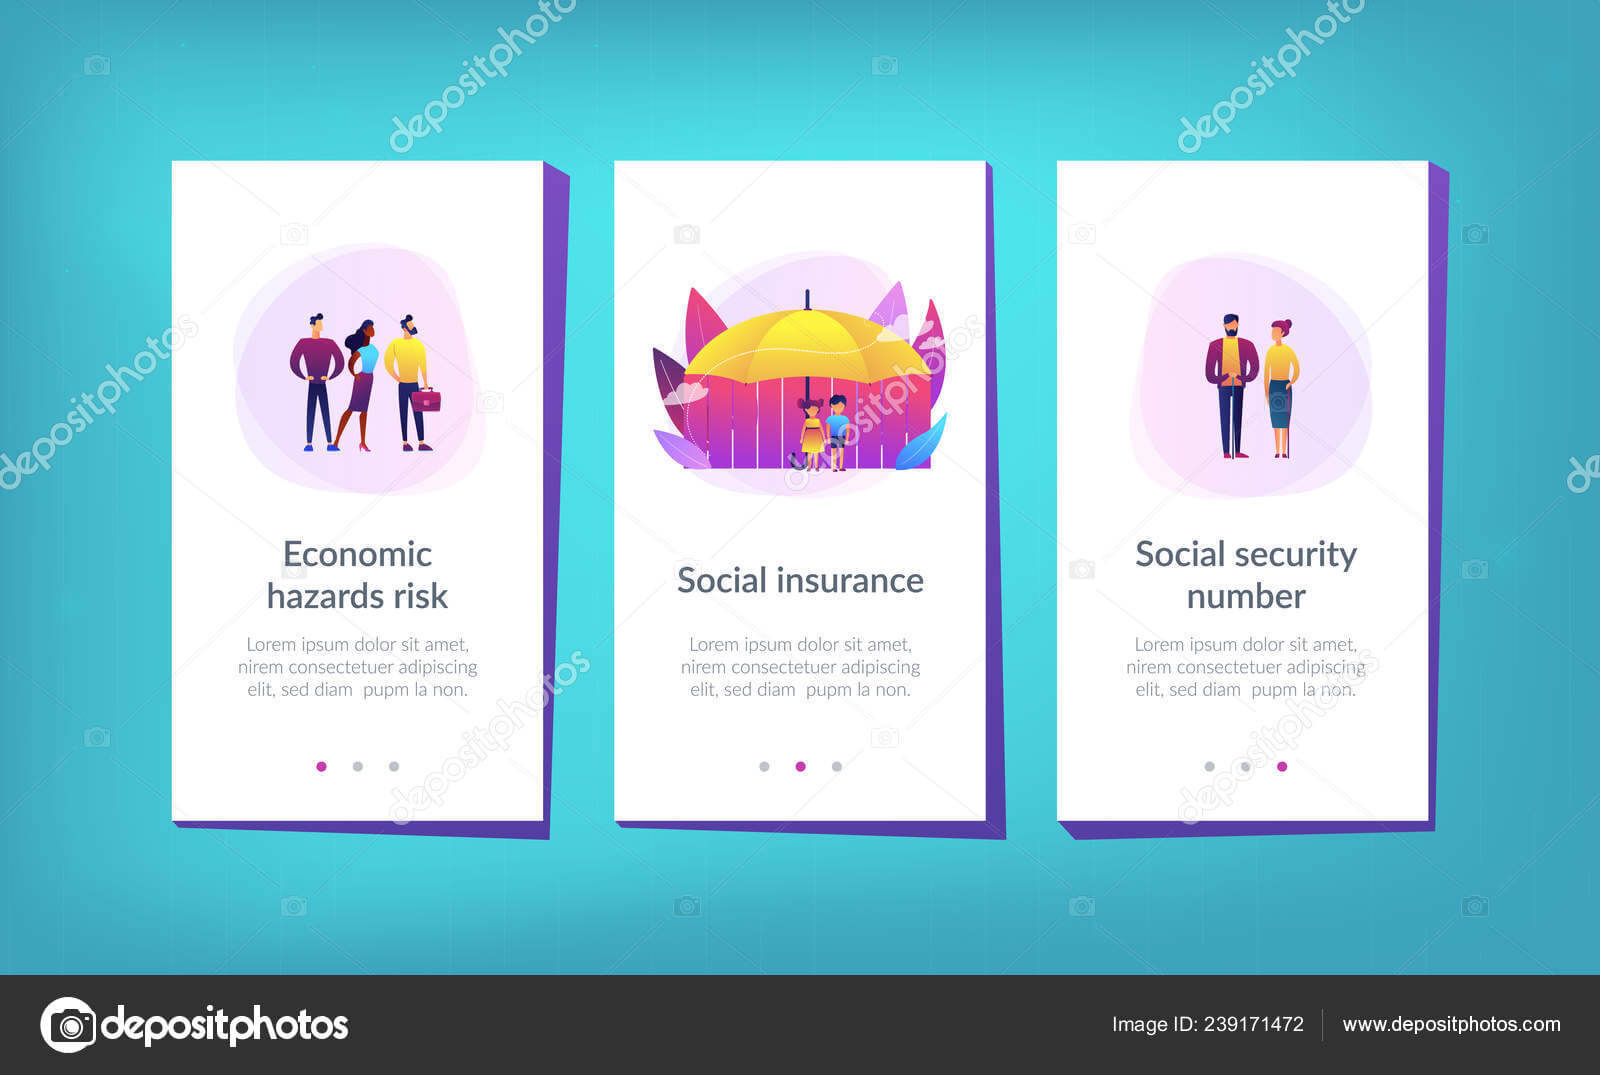 Blank Social Security Card Template | Social Insurance App Inside Social Security Card Template Download